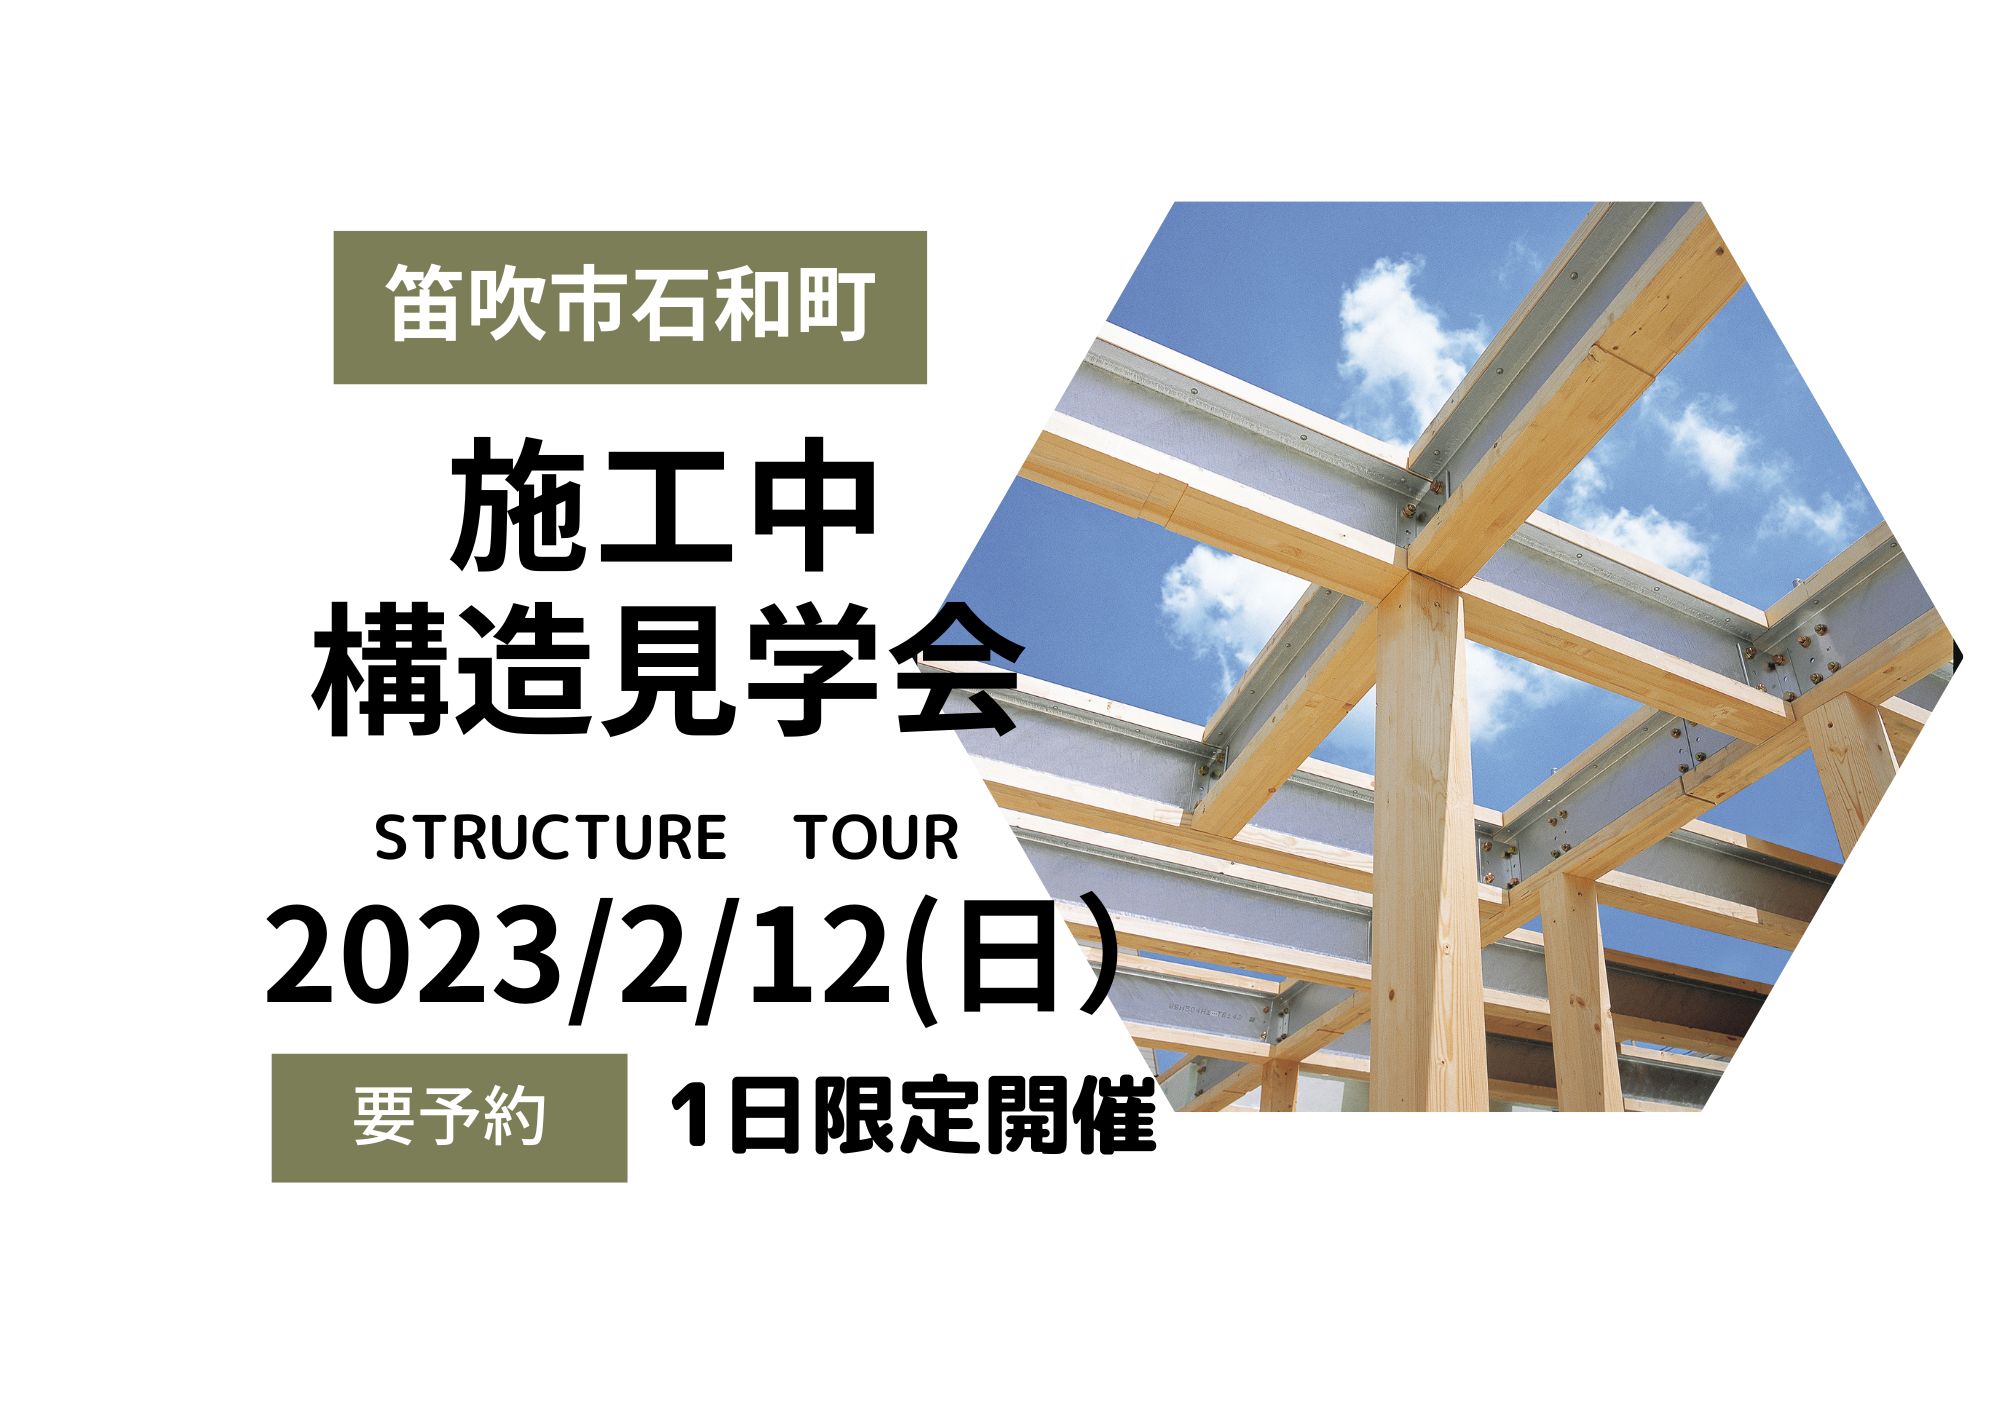 2023年2月12日（日曜日）「施工中構造見学会」開催します。笛吹市石和町10：00～15：00